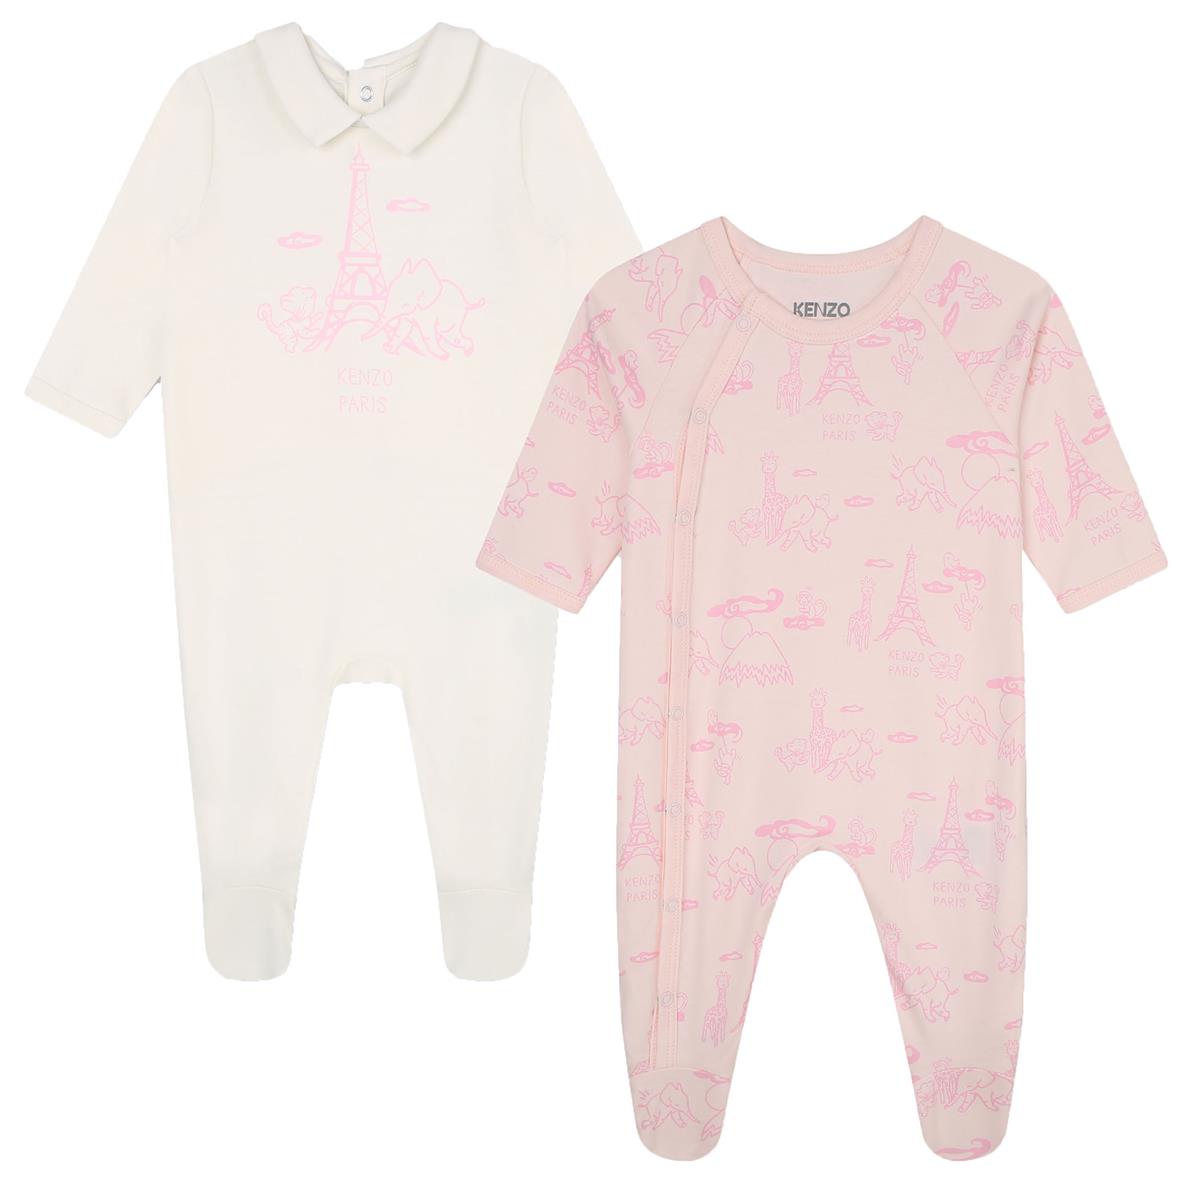 Baby Girls Pink Babysuit Set